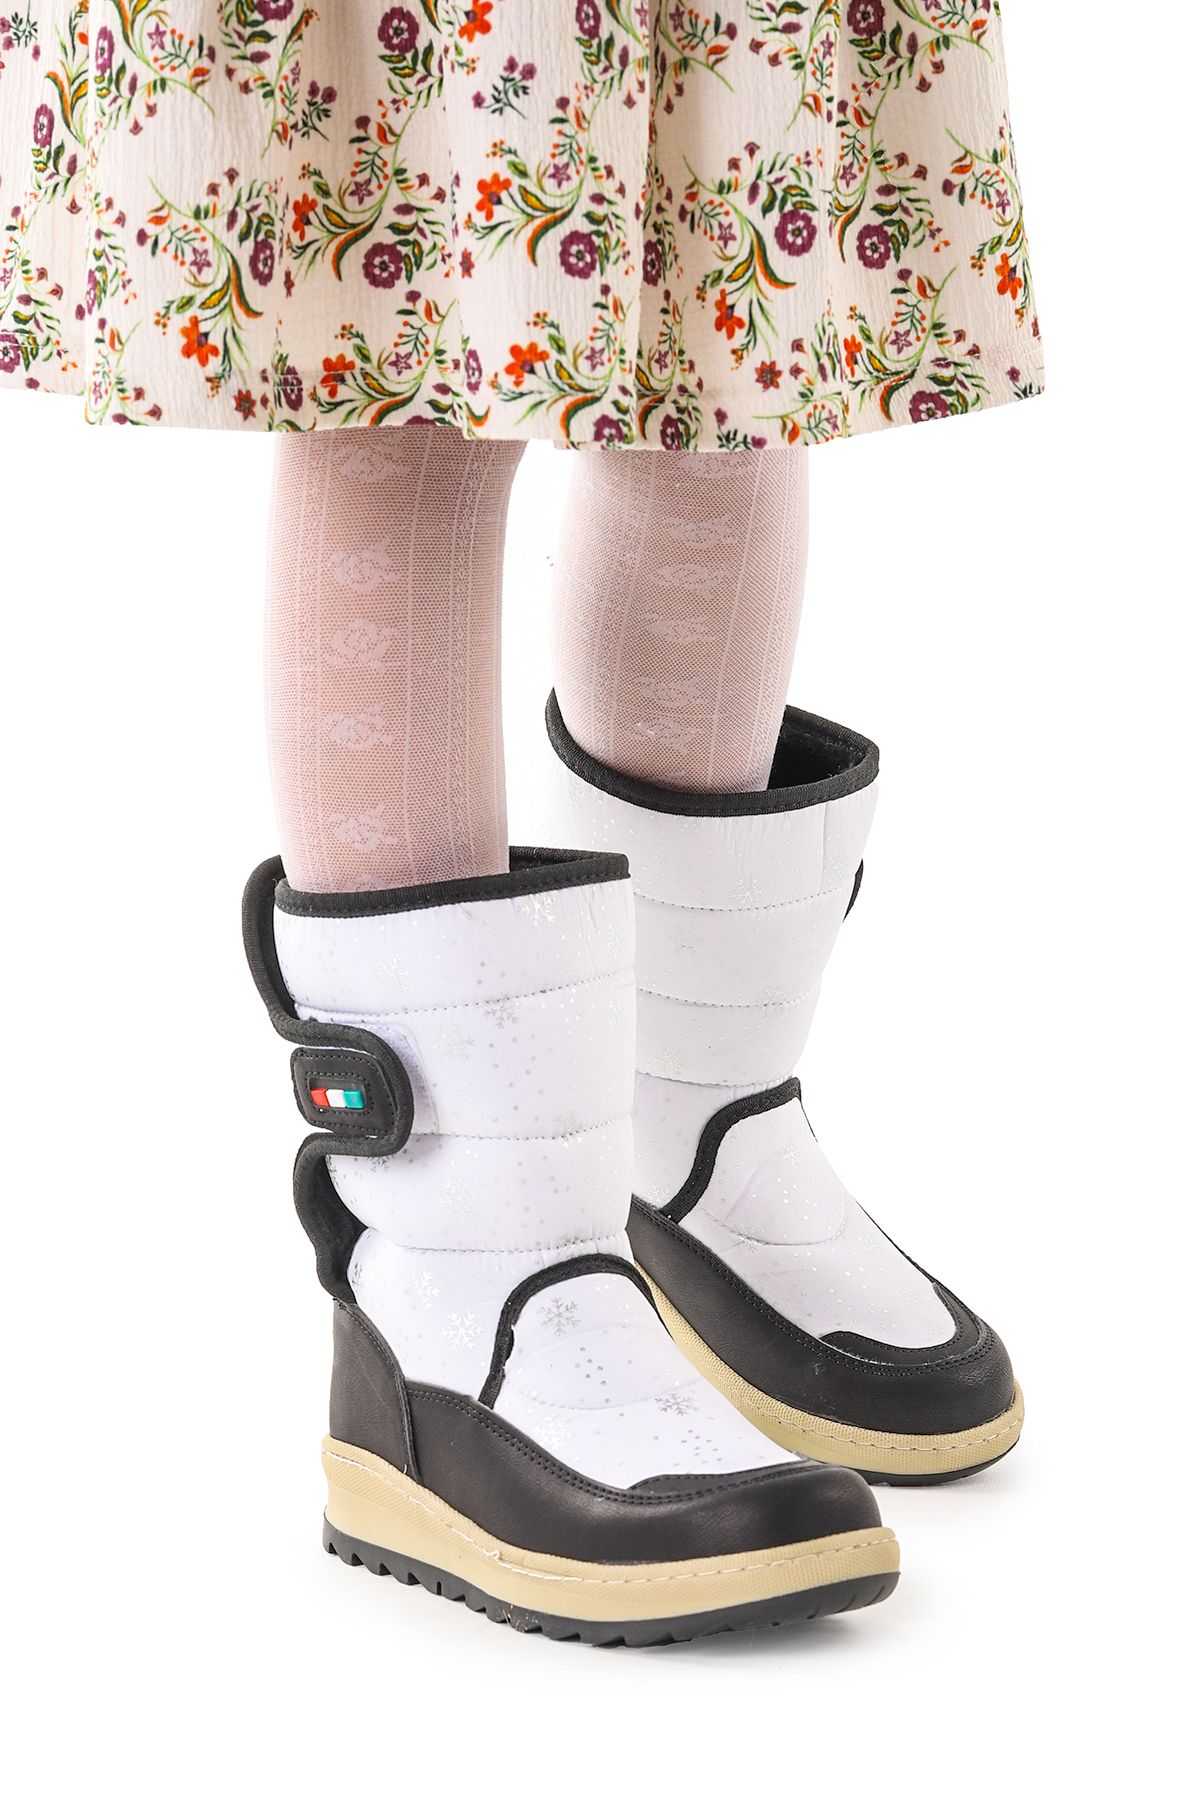 Kiko Kids Lp 708090 Kar Desenli Cırtlı Kız Çocuk Kar Bot Ayakkabı